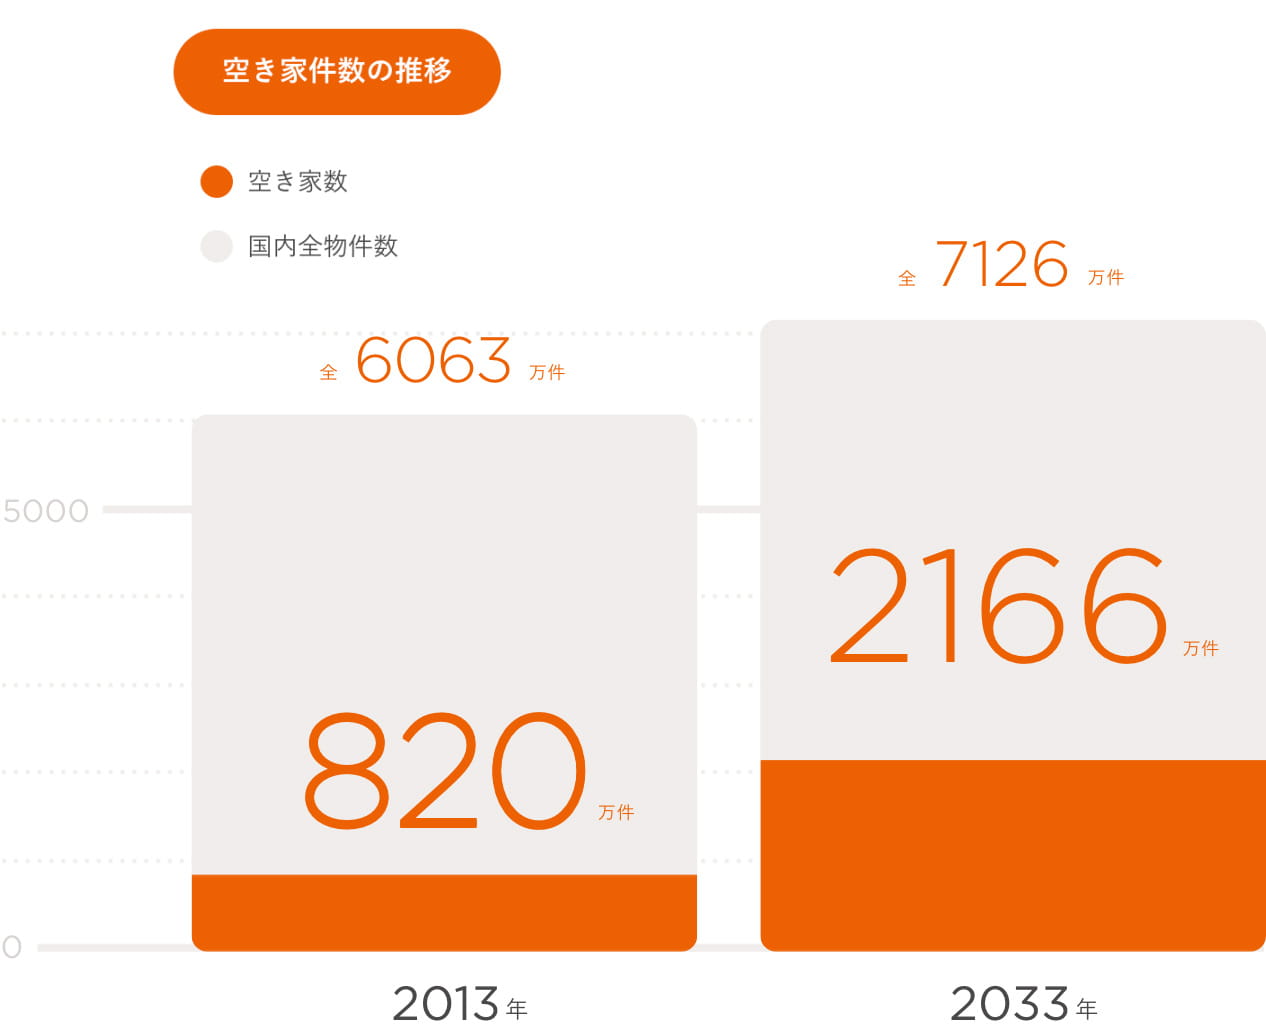 空き家件数の推移 2013年：6063万件中820万件、2033年：7126万件中2166万件